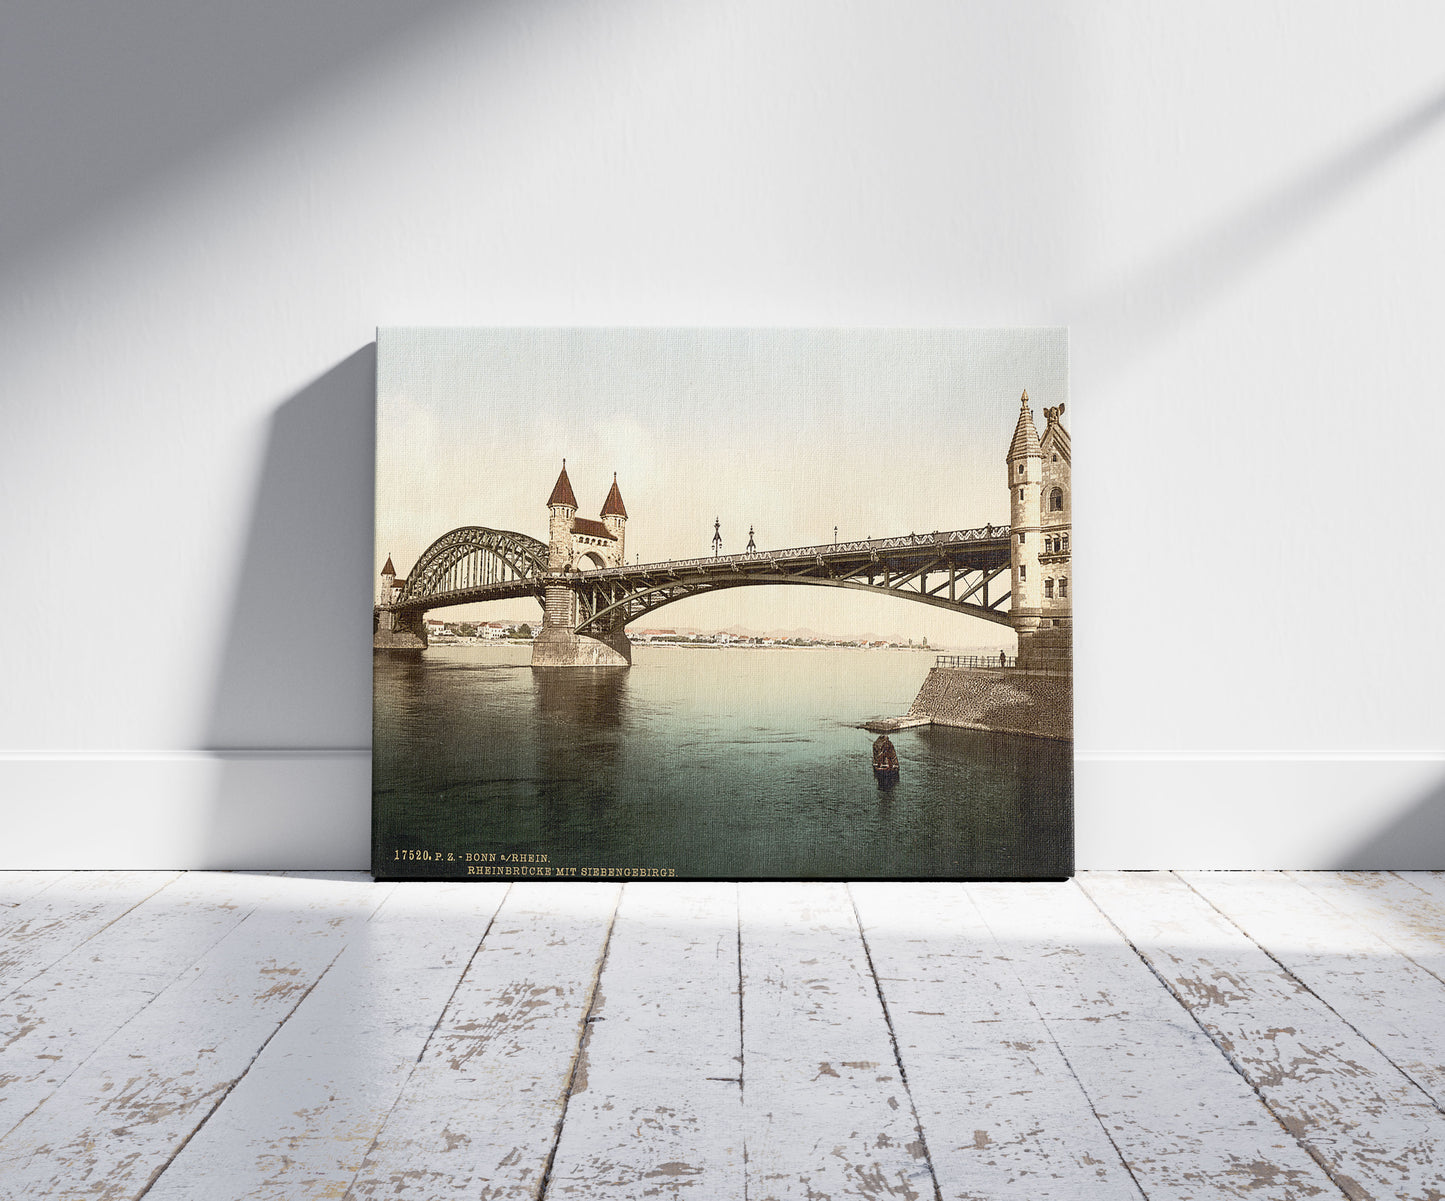 A picture of Rhine Bridge and Siebengebirge, Germany